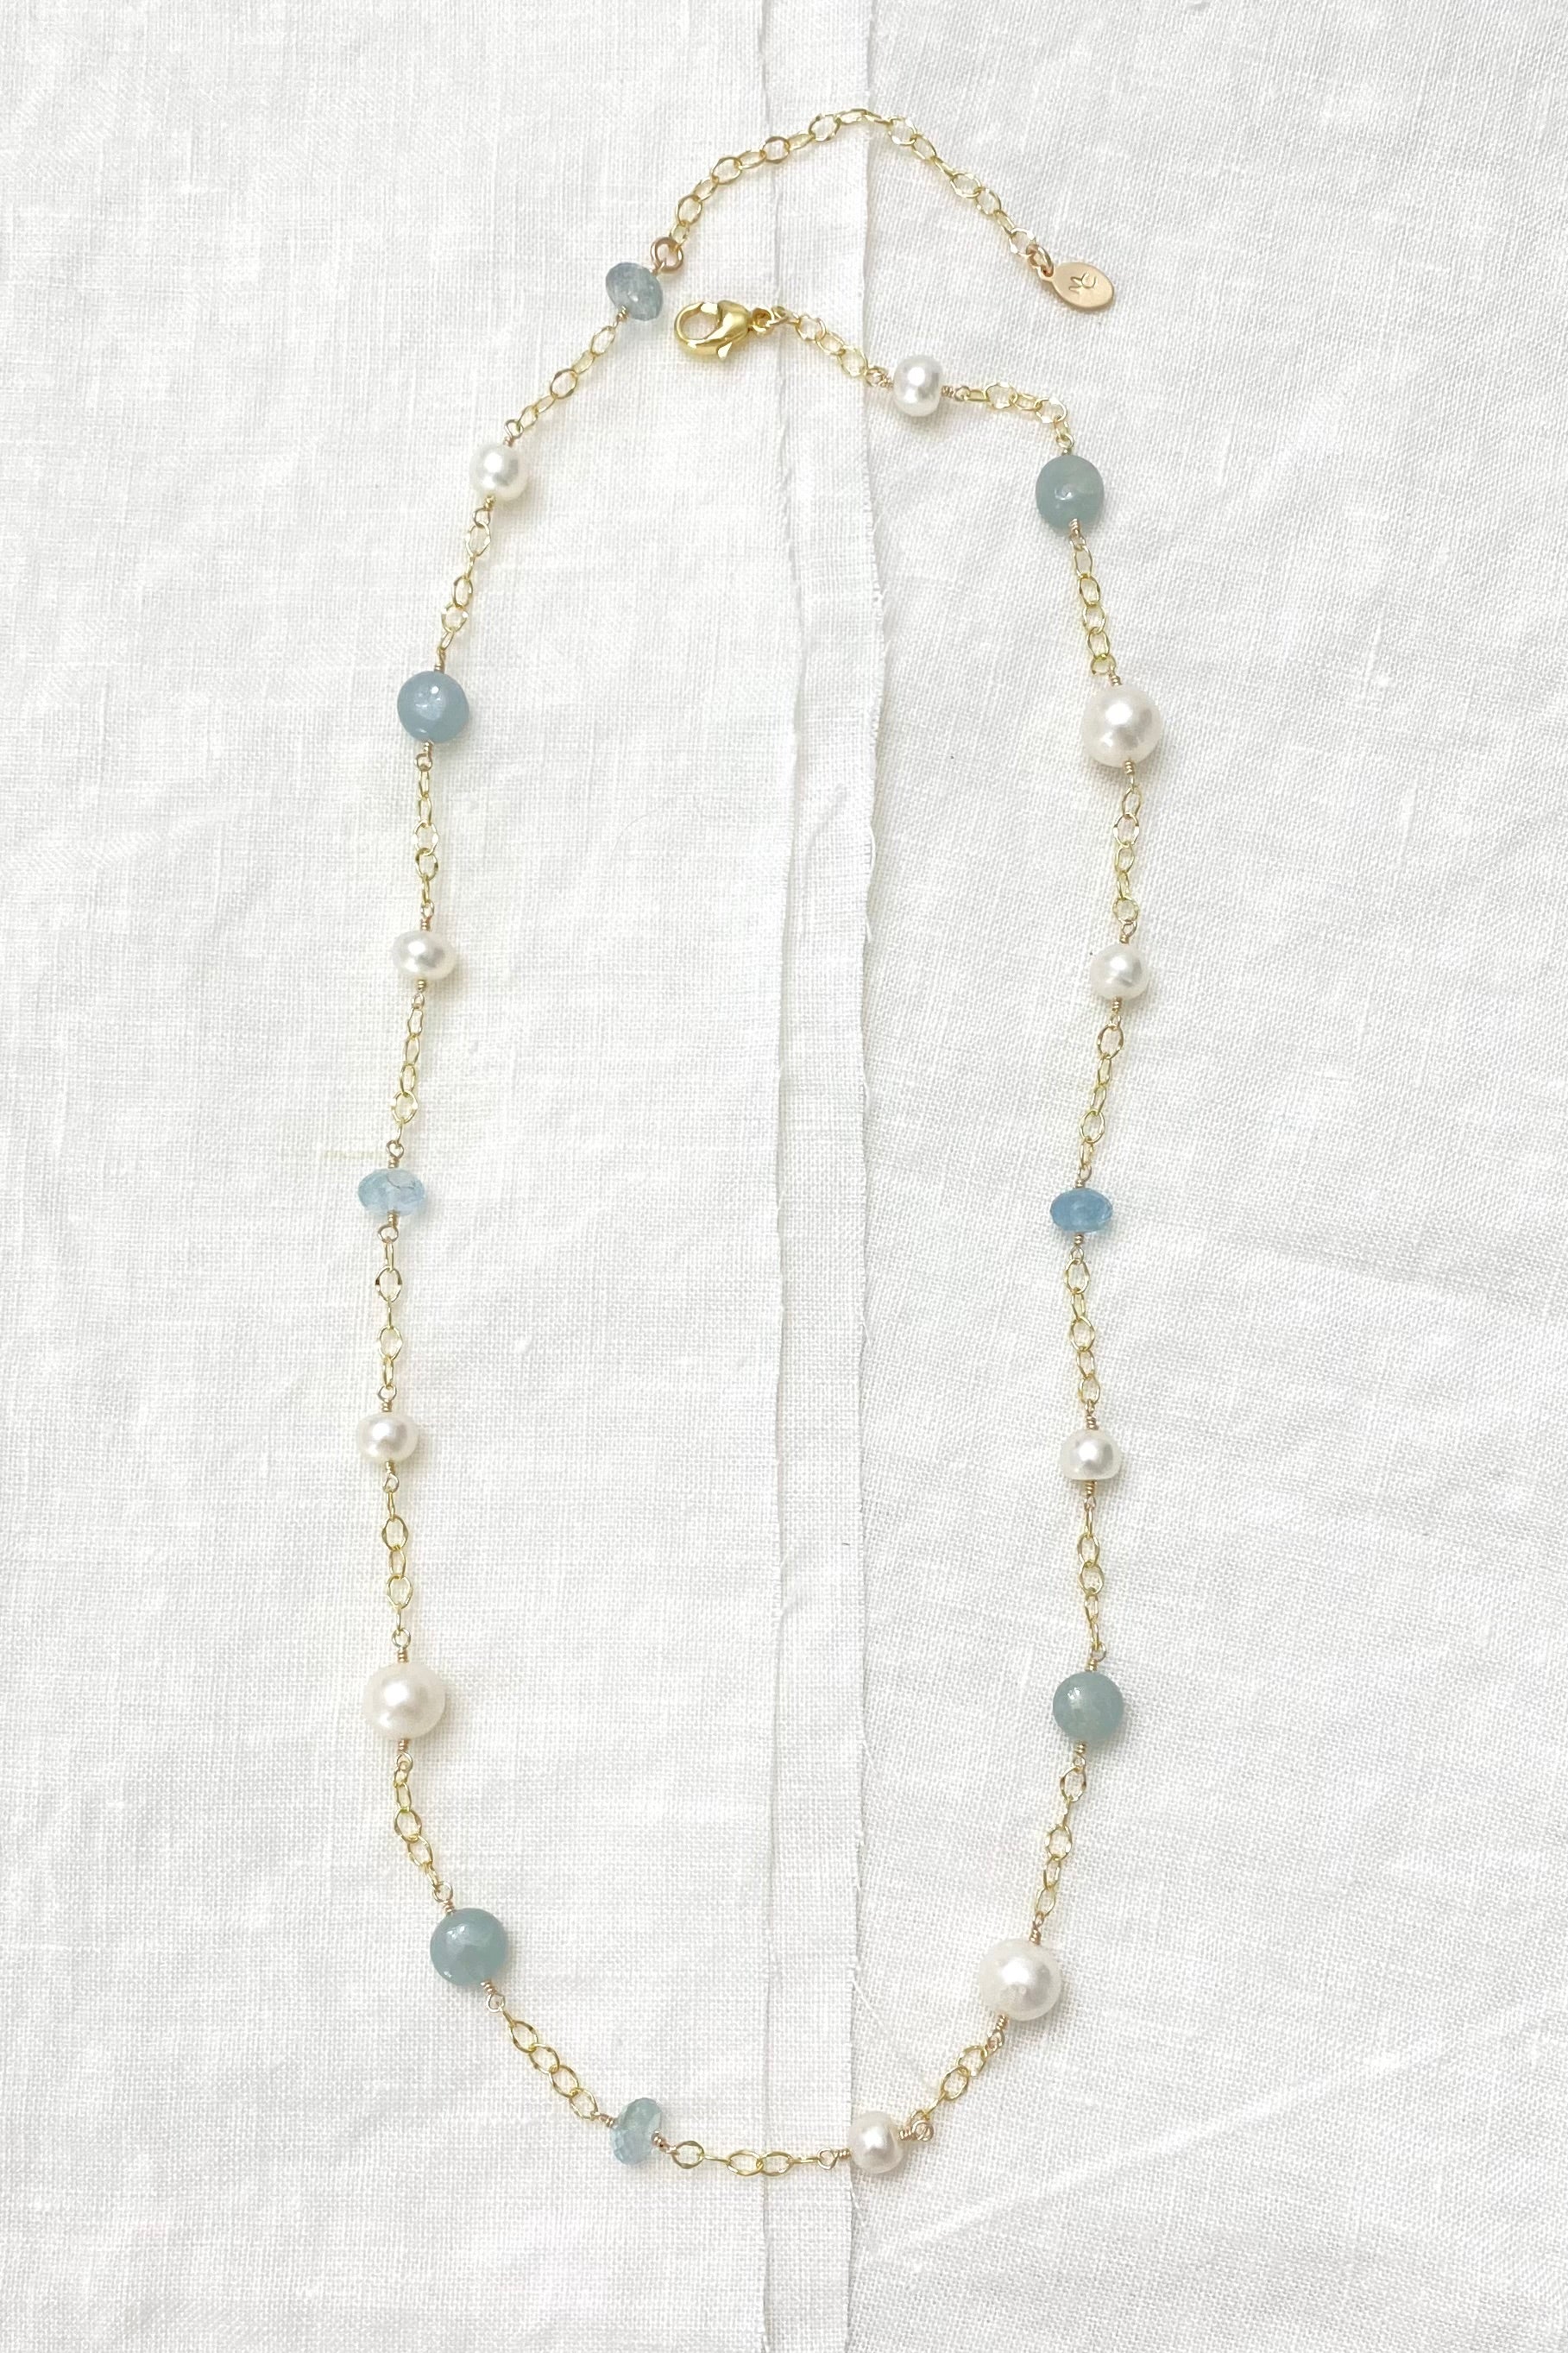 Organic Aqua Station Necklace | Von Bargen's Jewelry